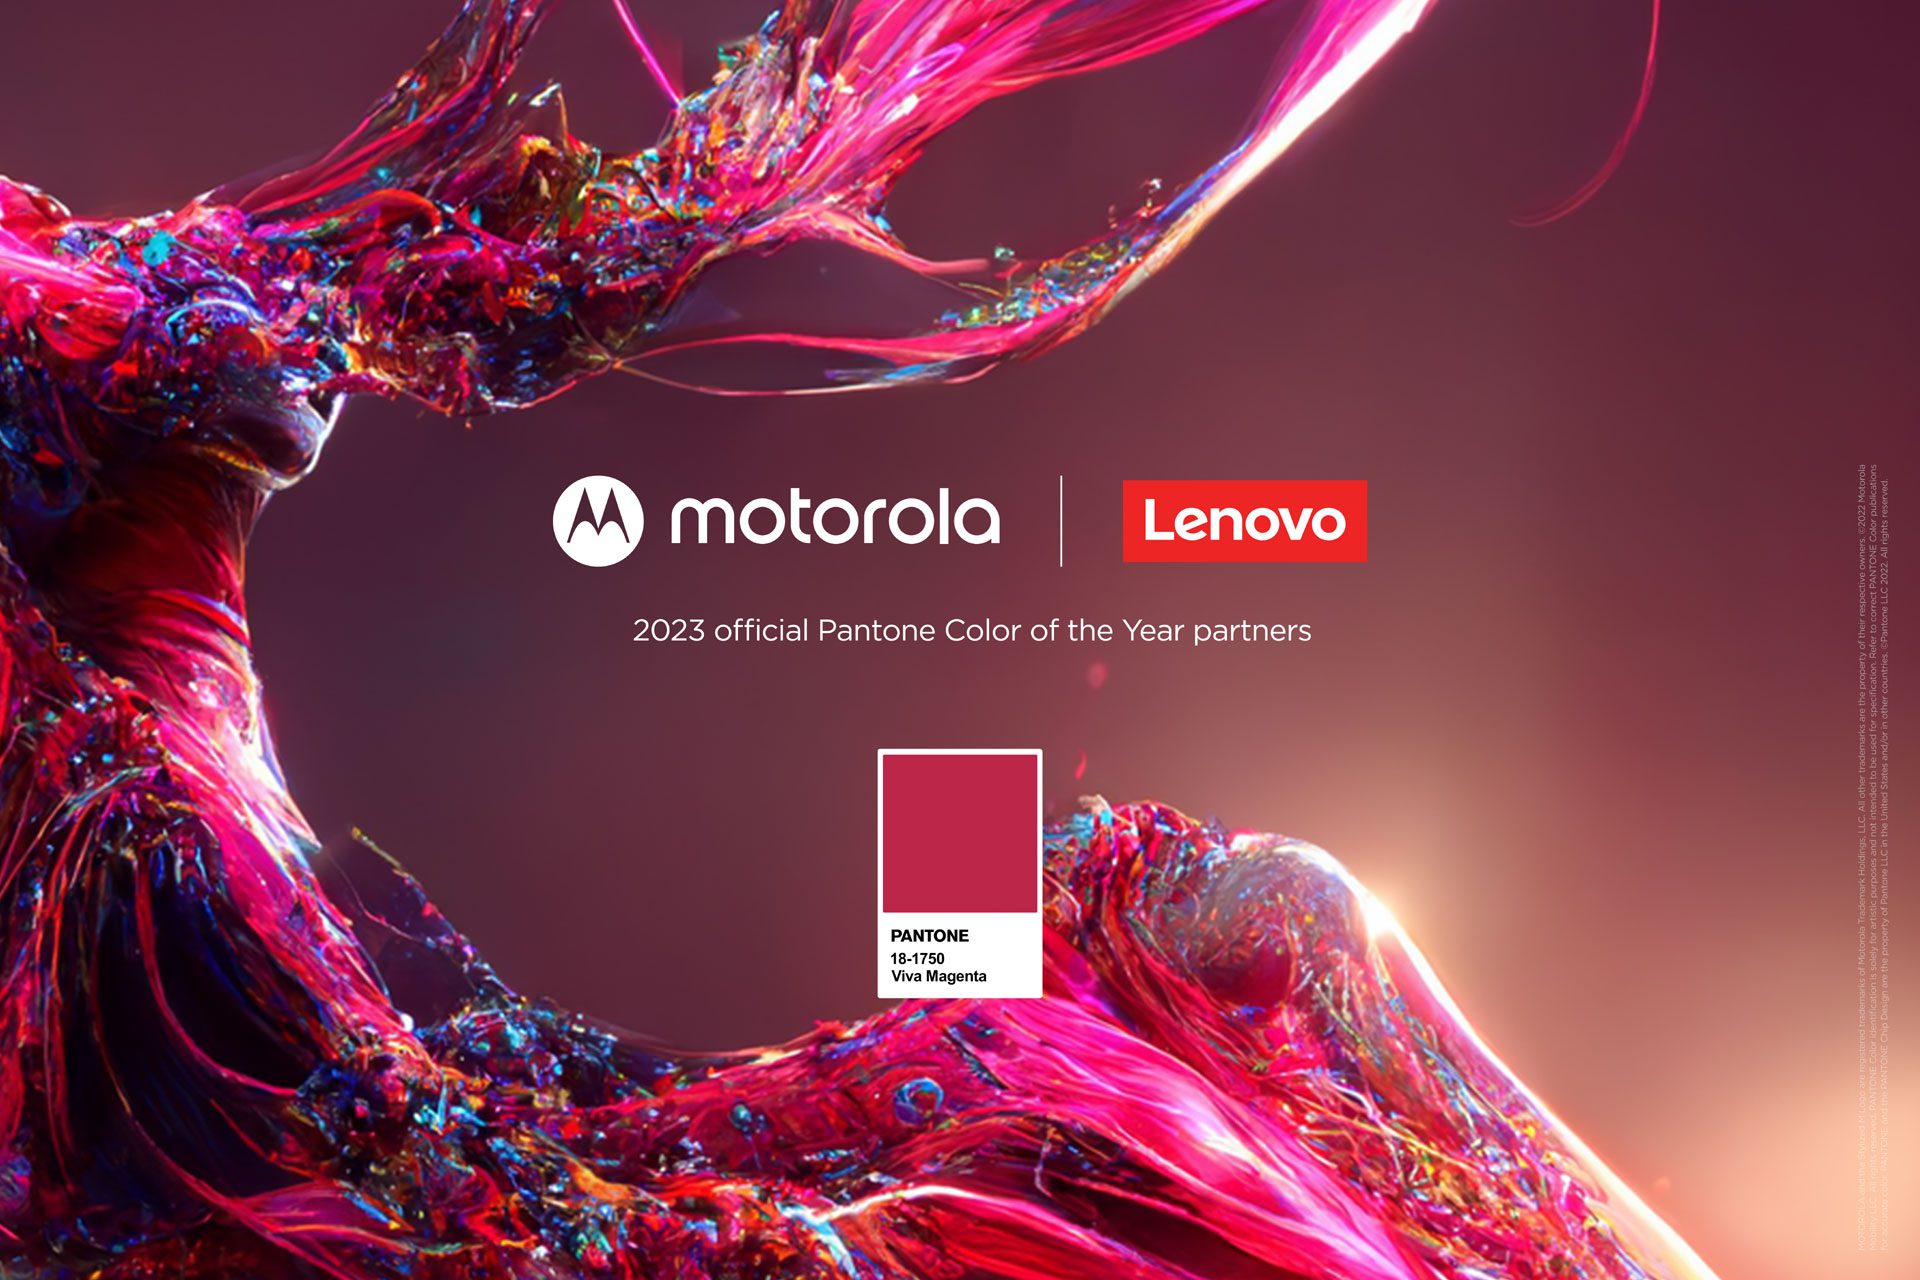 Motorola lança edição especial do motorola edge 30 fusion na cor Viva Magenta, cor do ano 2023 anunciada pela PANTONE